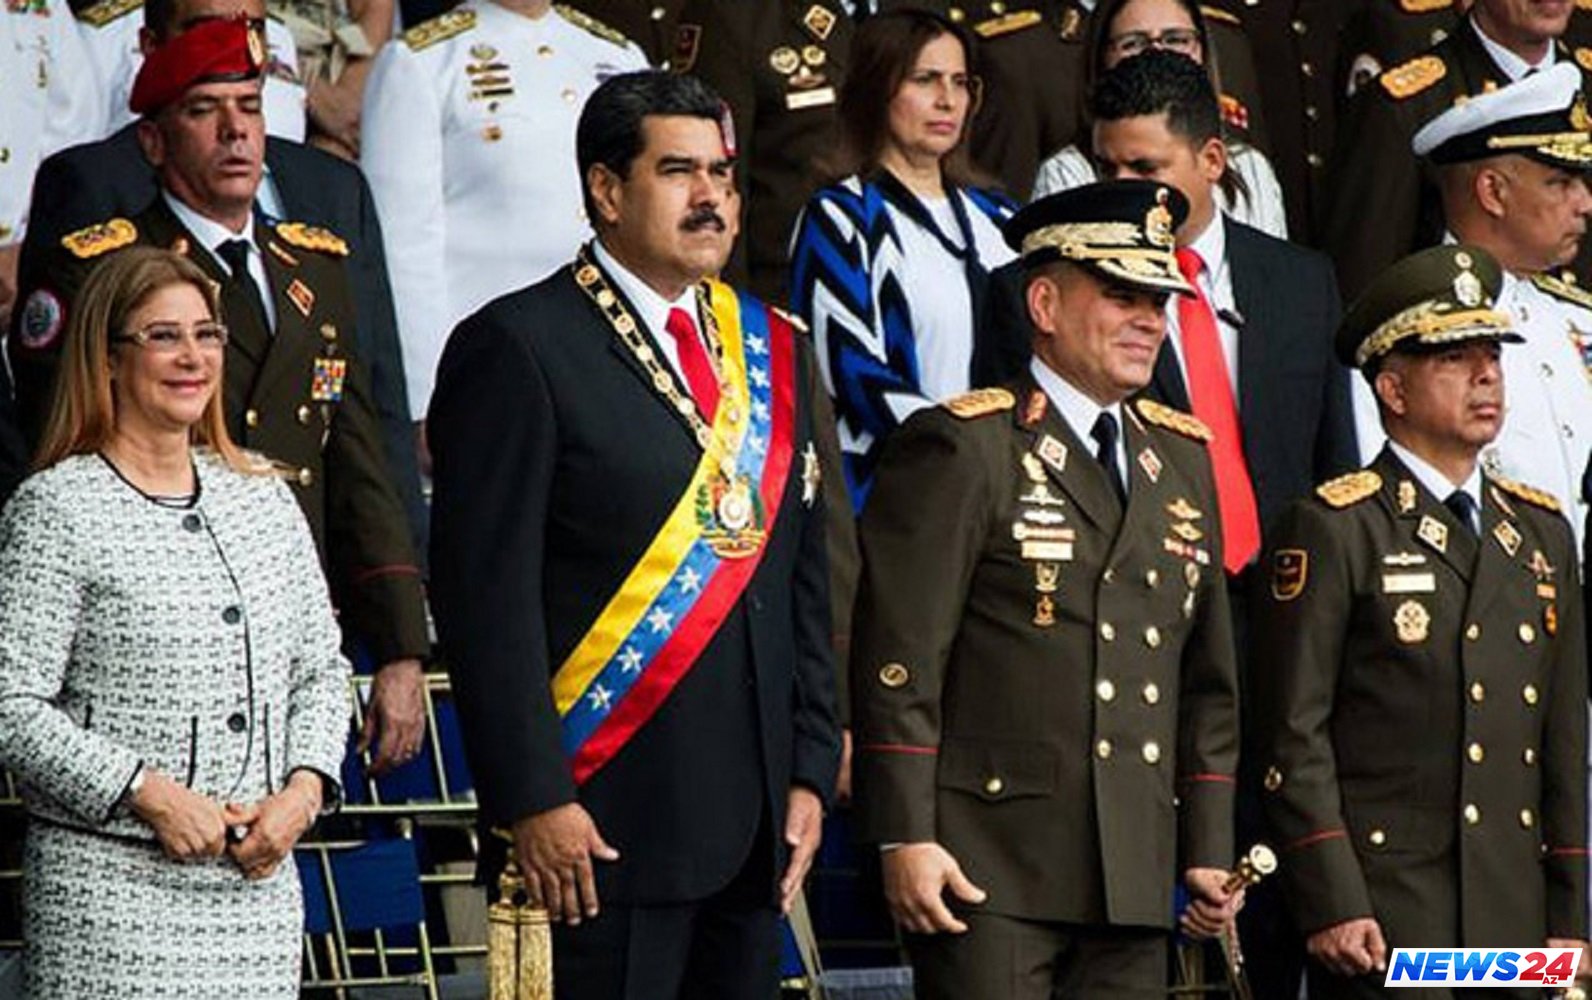 Venesuela prezidentini öldürmək istədilər - Həmkarından şübhələnir - Fotolar - Video 